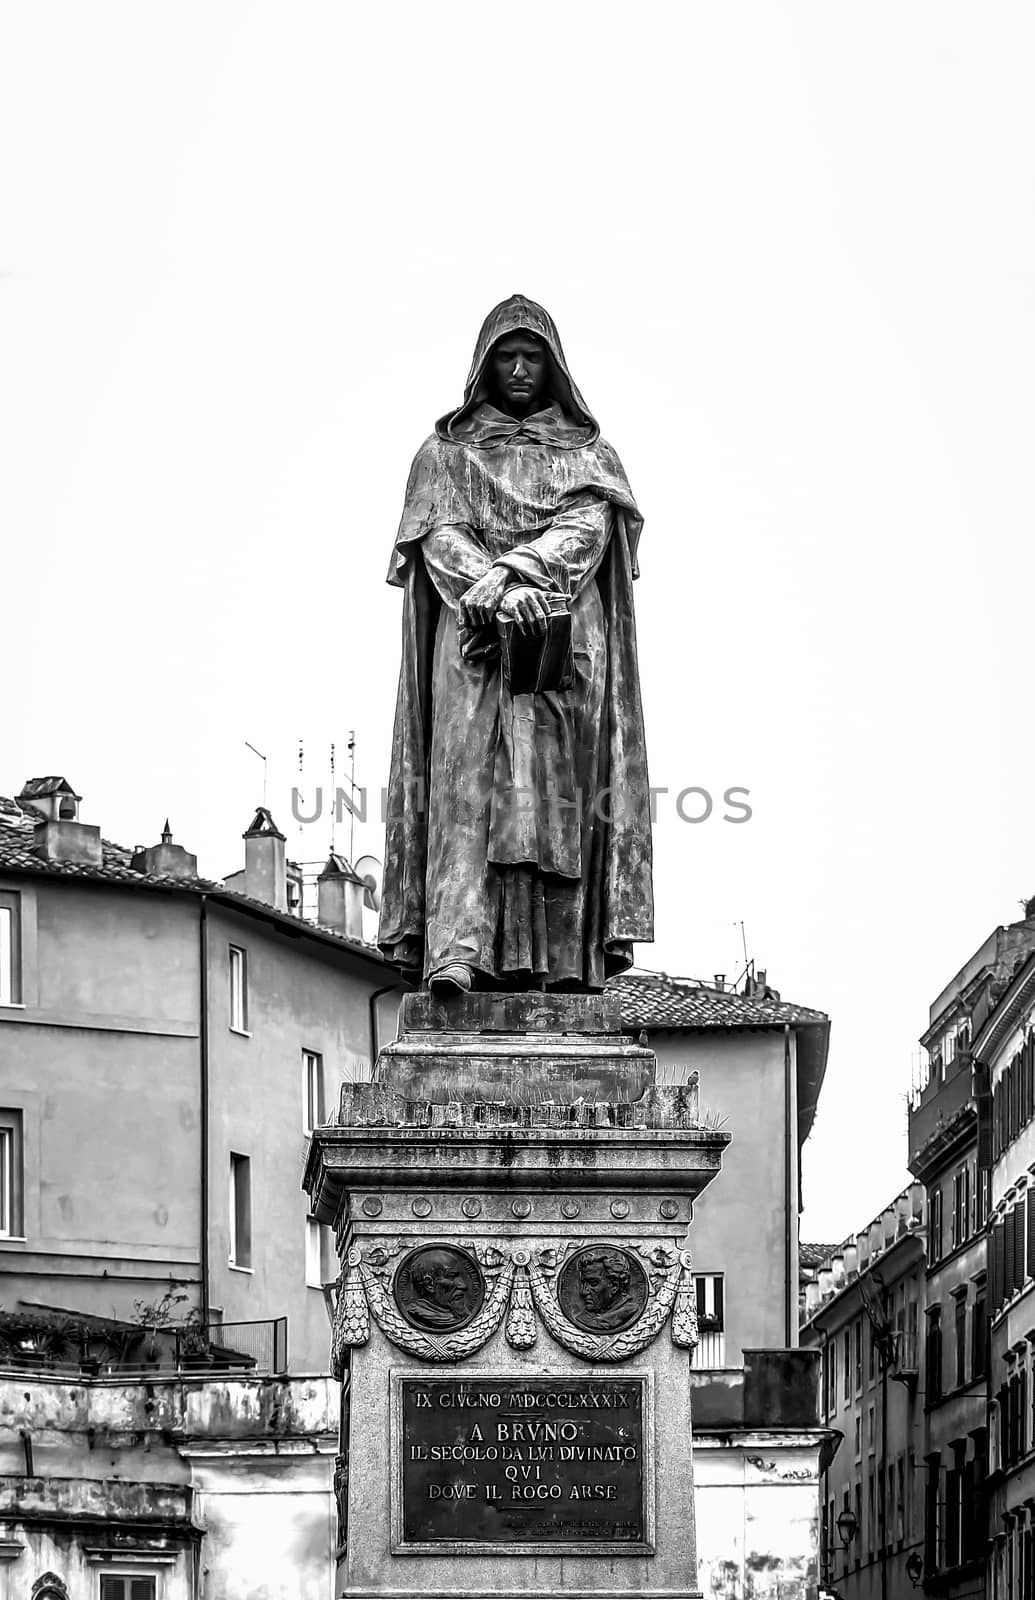 The bronze statue of Giordano Bruno ( Dominican friar, philosopher, mathematician, poet, and cosmological theorist) in Campo de Fiori in Rome